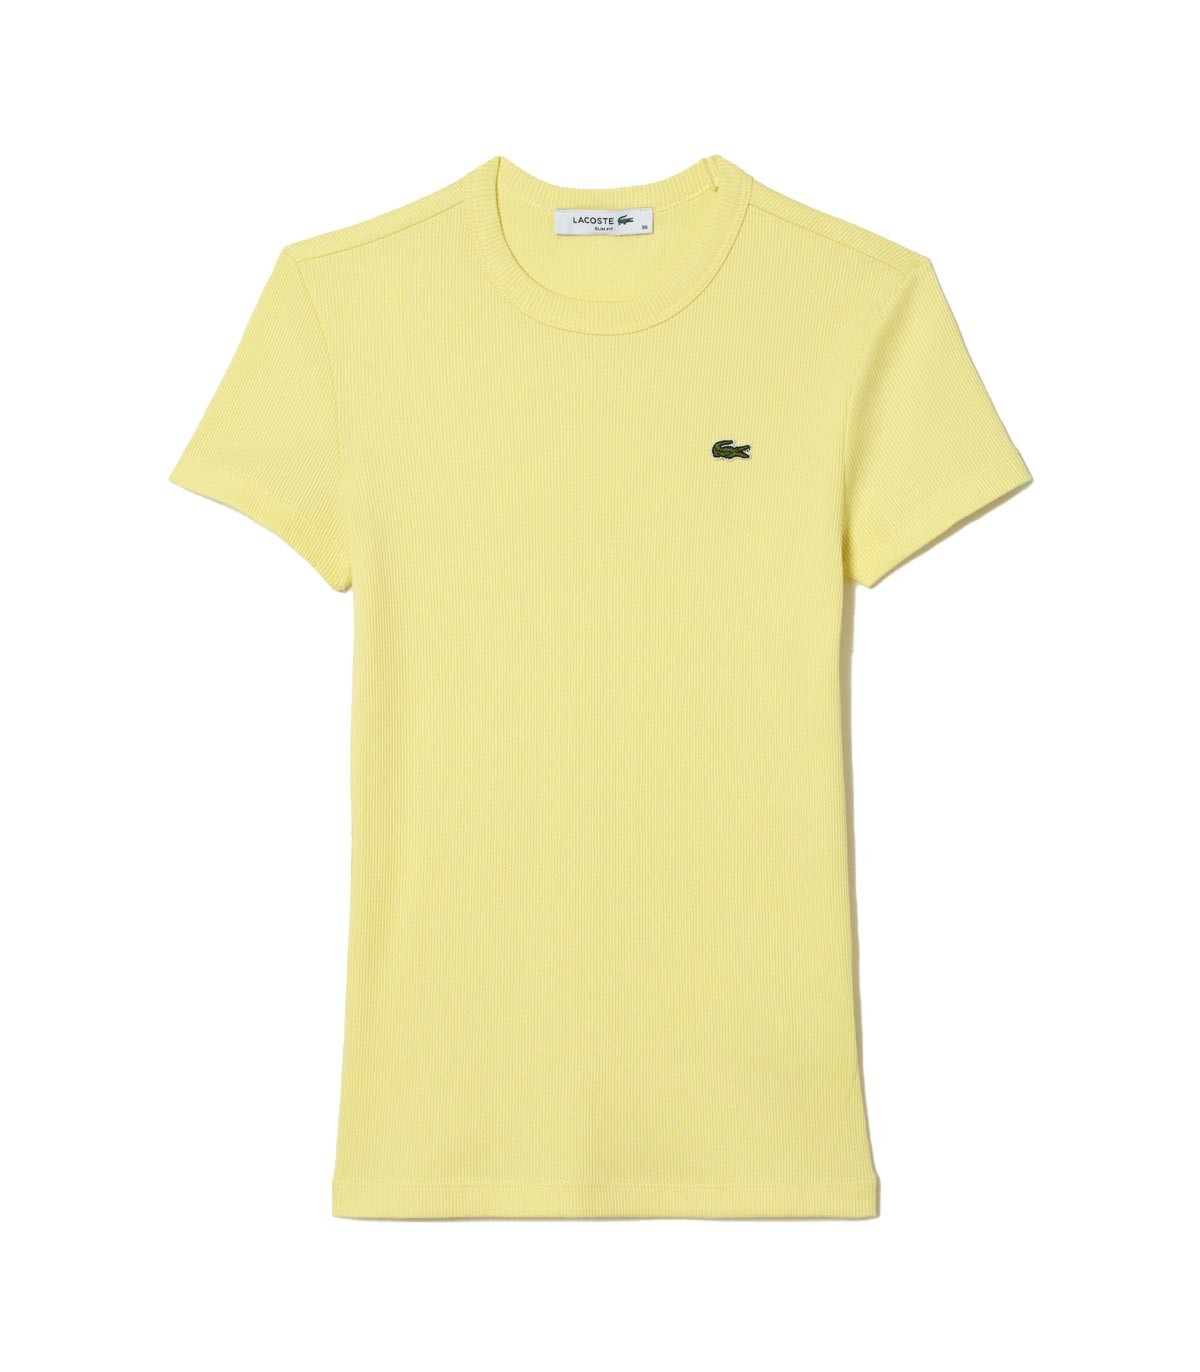 Lacoste - Camiseta Slim Fit - Amarillo